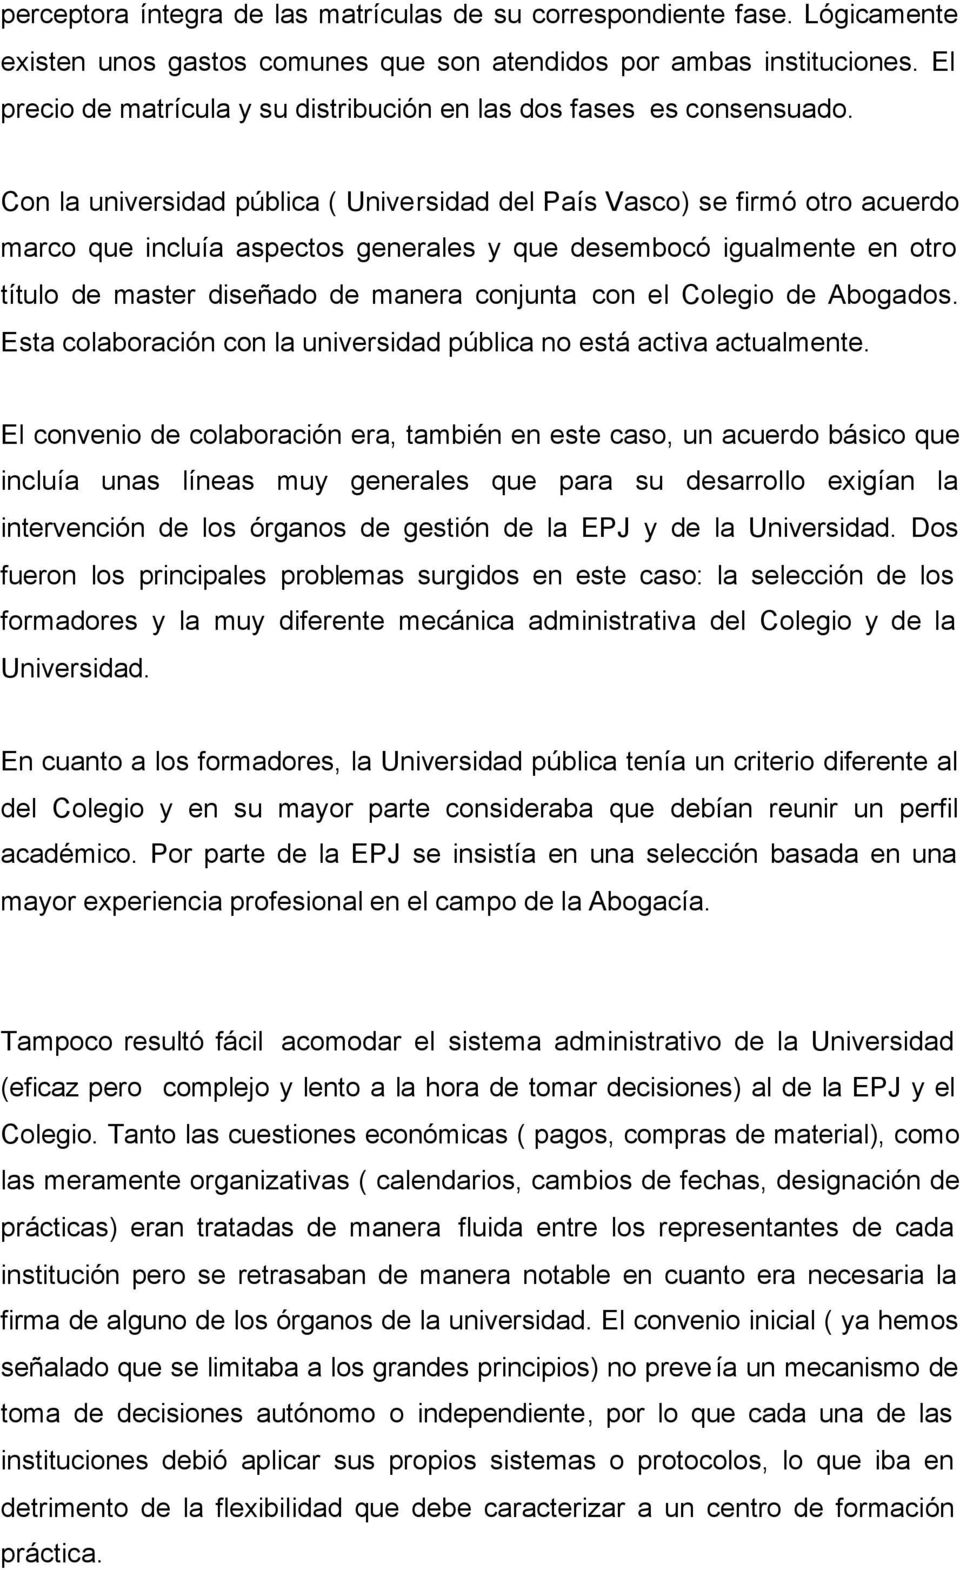 Con la universidad pública ( Universidad del País Vasco) se firmó otro acuerdo marco que incluía aspectos generales y que desembocó igualmente en otro título de master diseñado de manera conjunta con